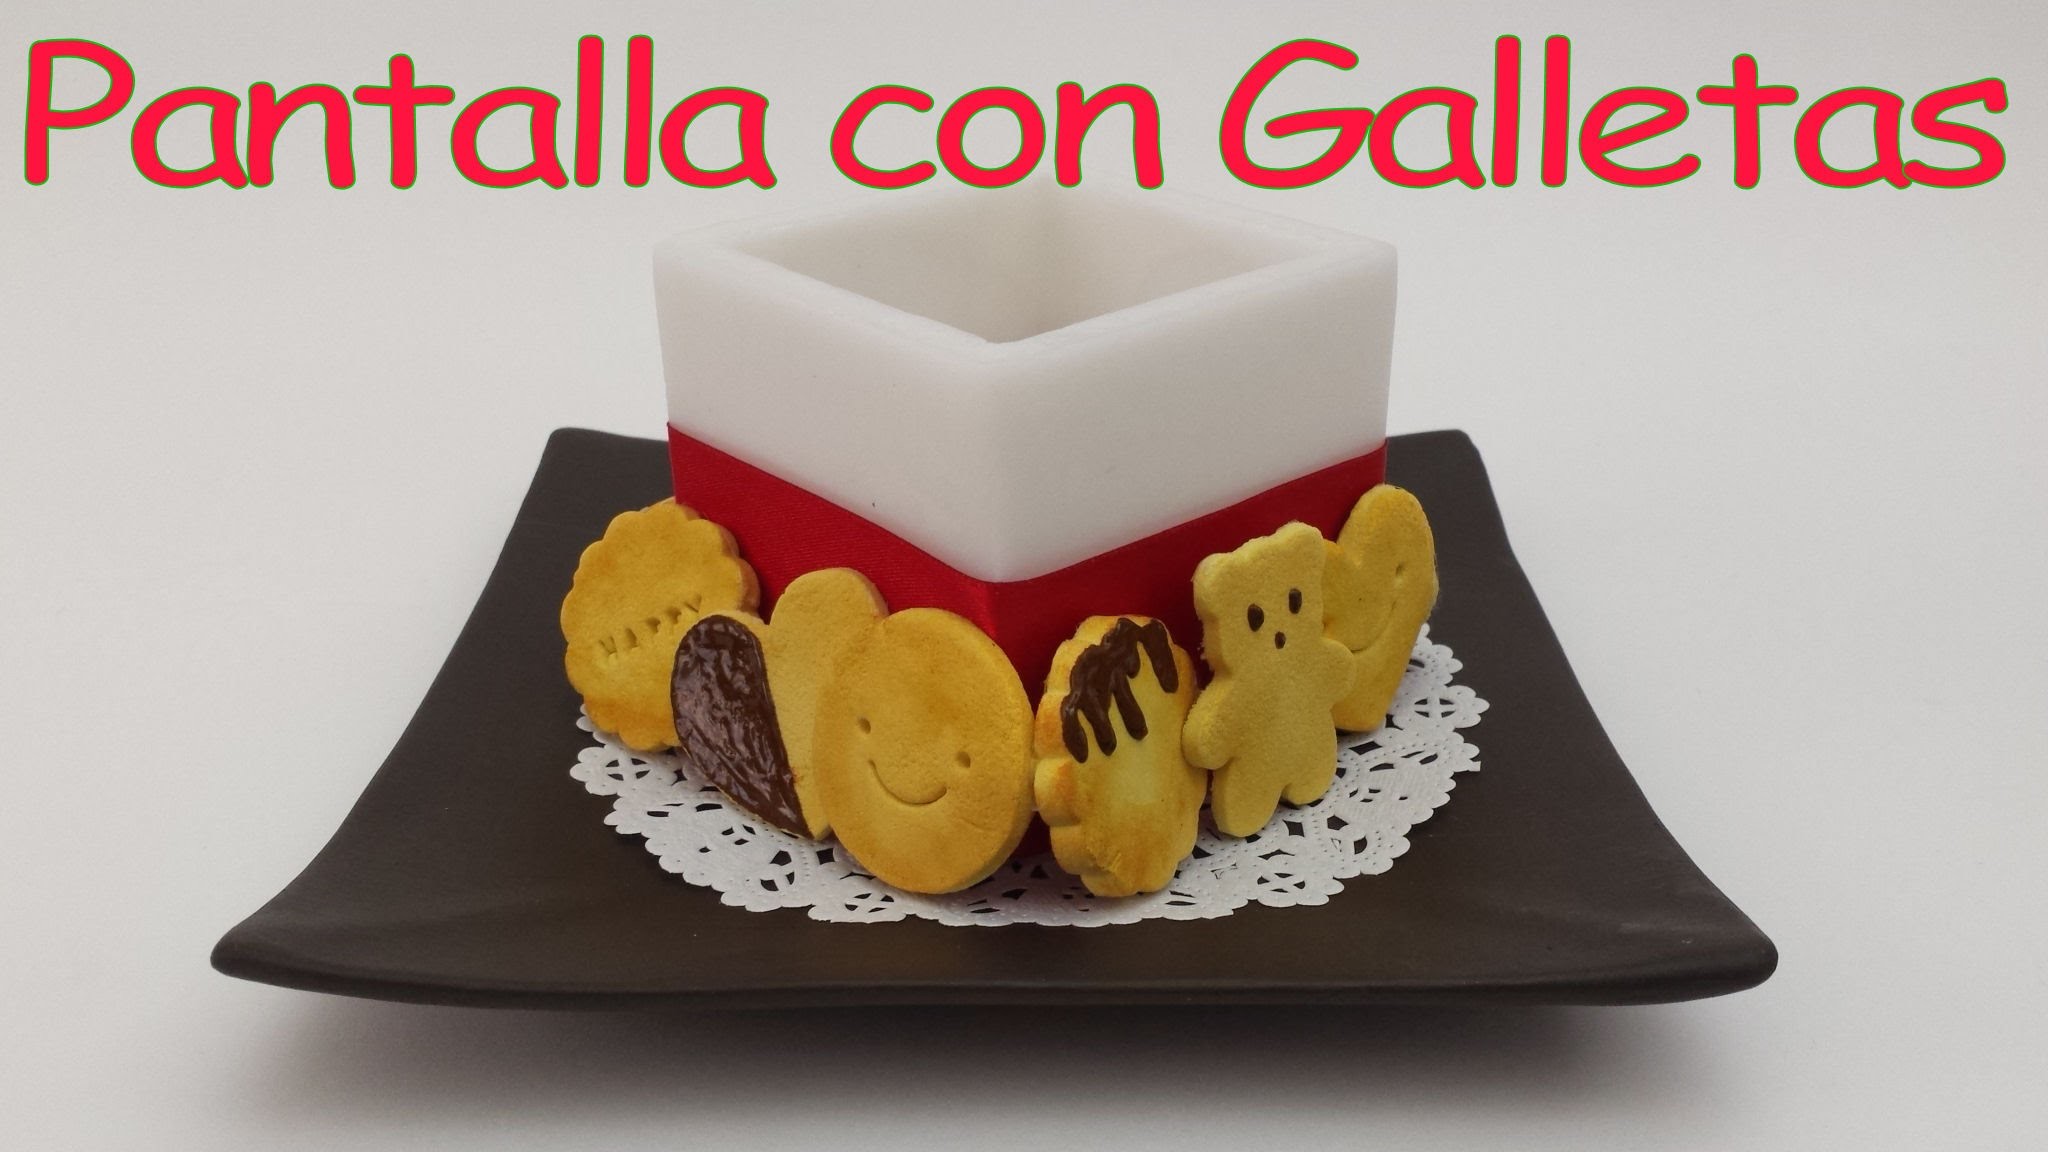 Pantalla con Galletas.DIY TUTORIAL